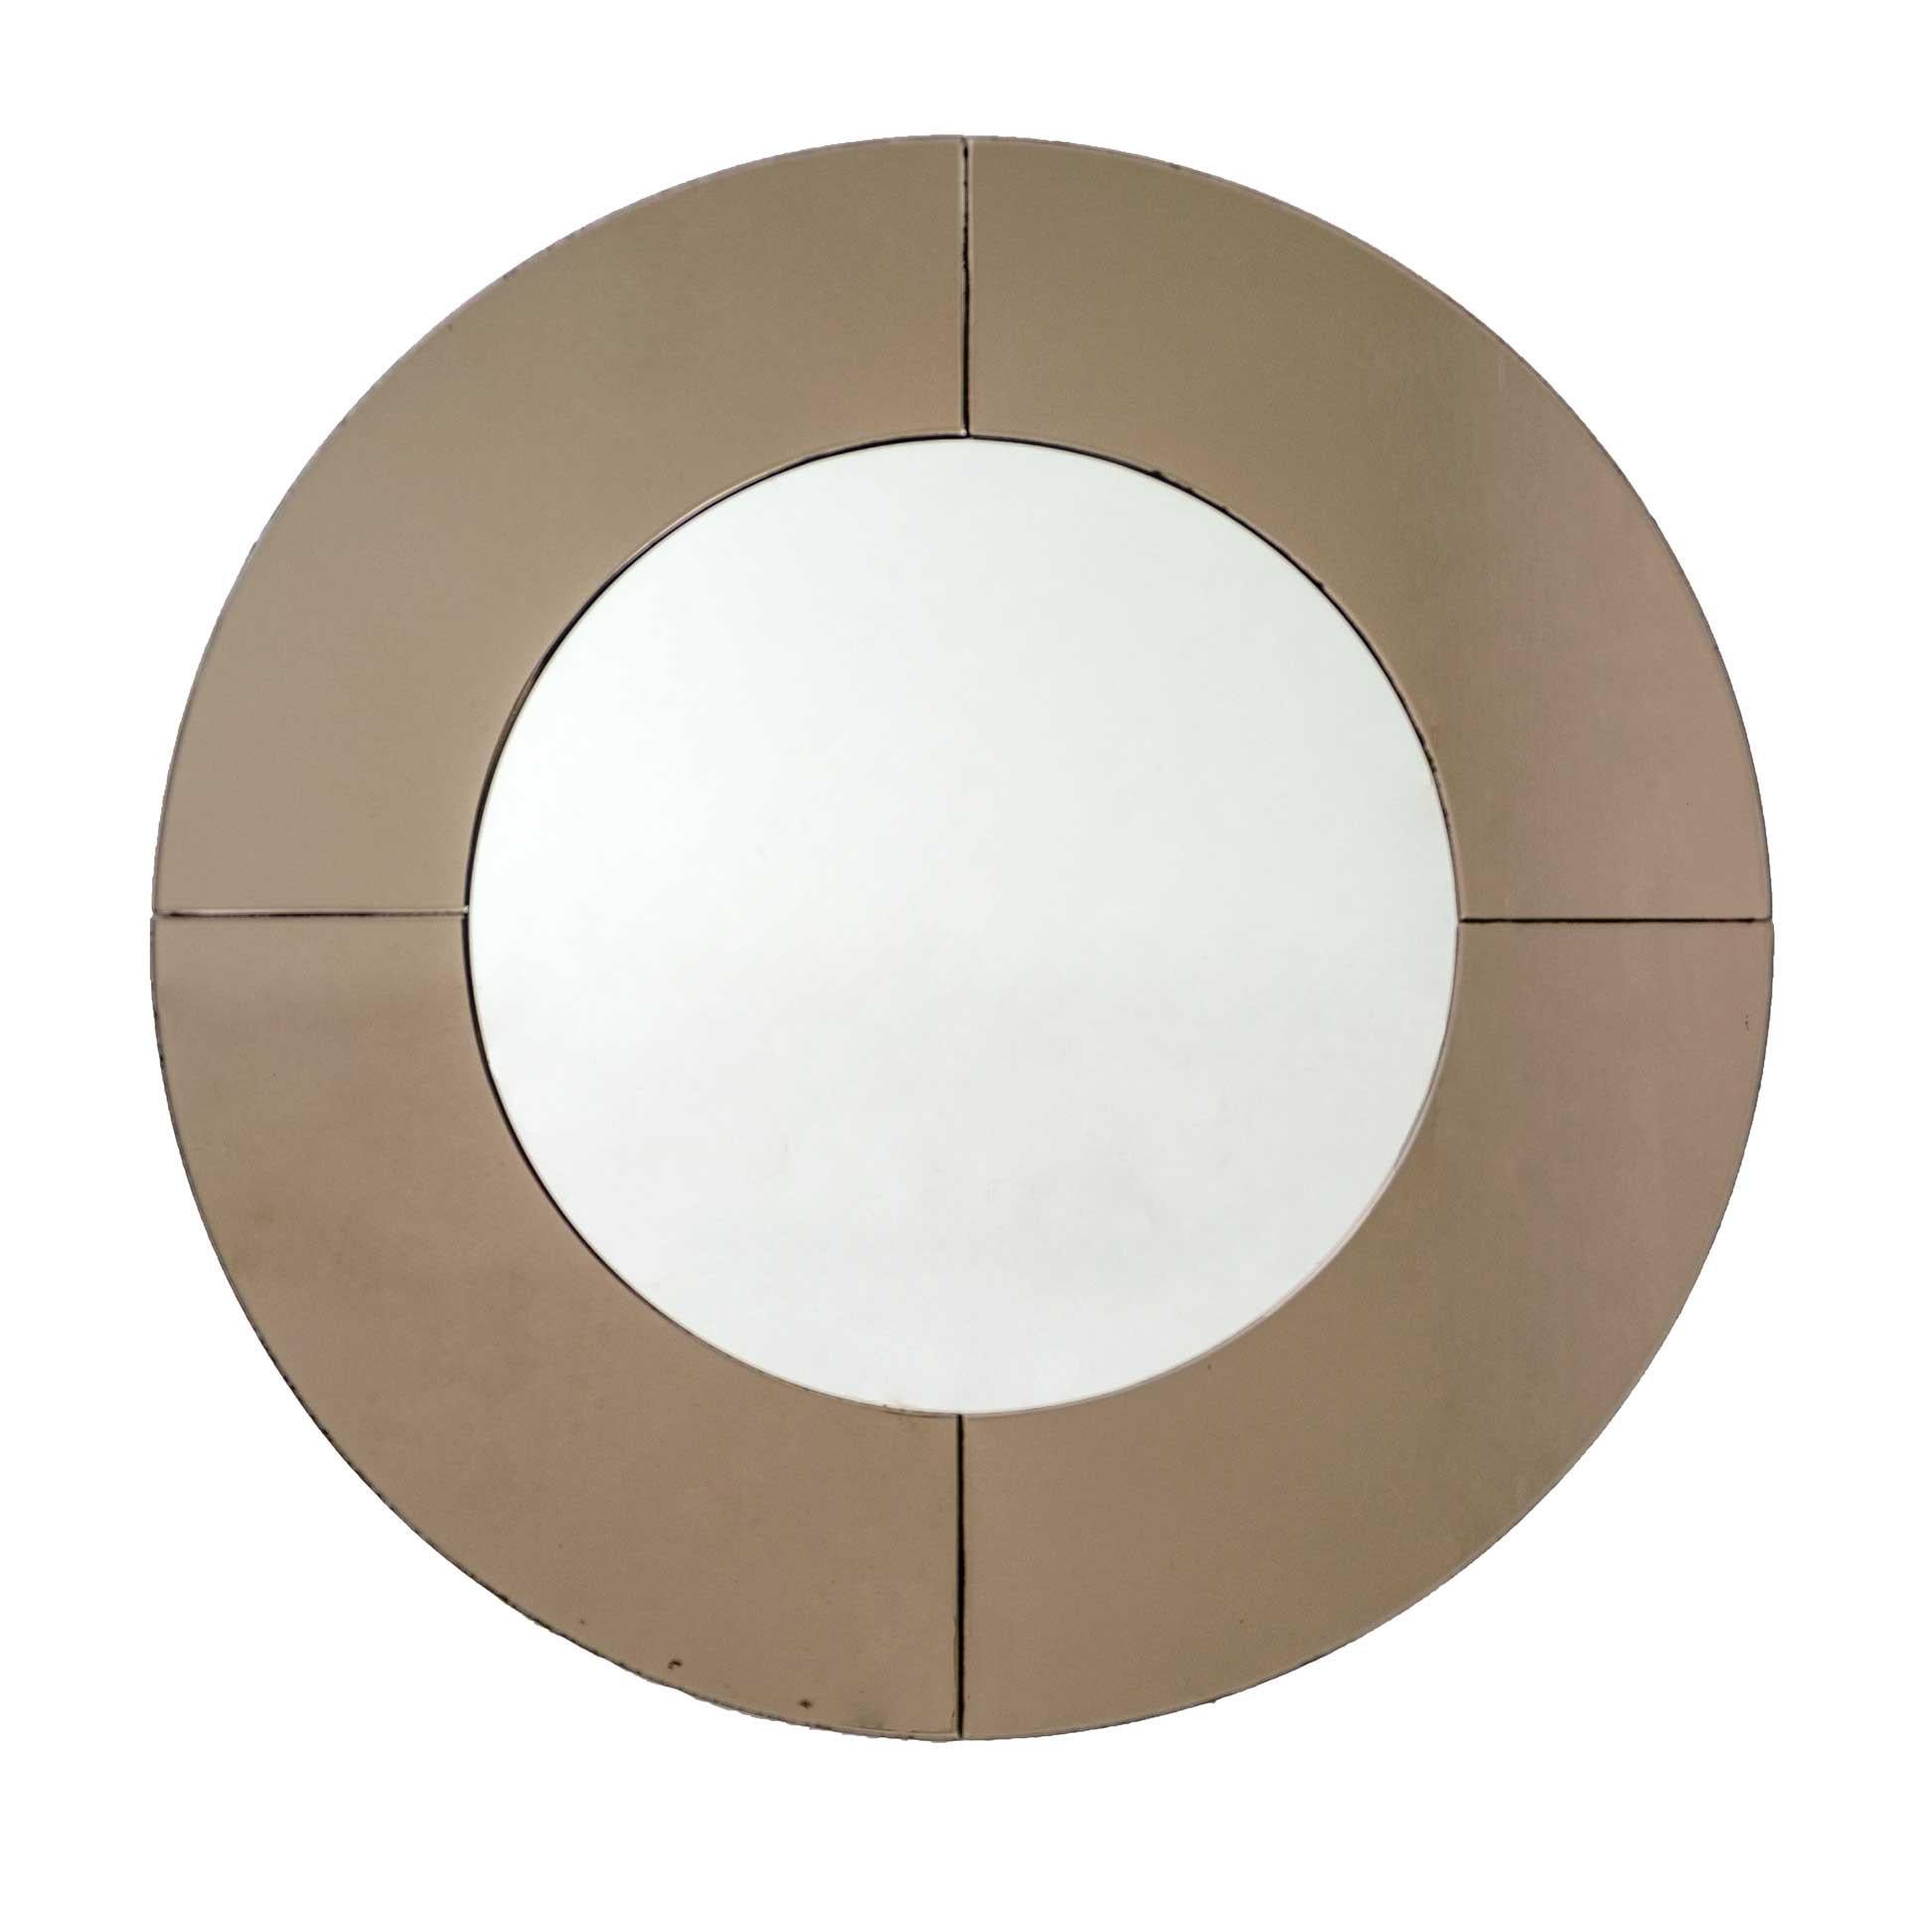 Imposant et élégant miroir mural circulaire en verre réfléchissant de couleur bronze fumé. Le miroir s'adapte à tout type d'environnement, du vintage au moderne. Fabriqué en Italie dans les années 1970.
Usure conforme à l'âge et à l'utilisation,